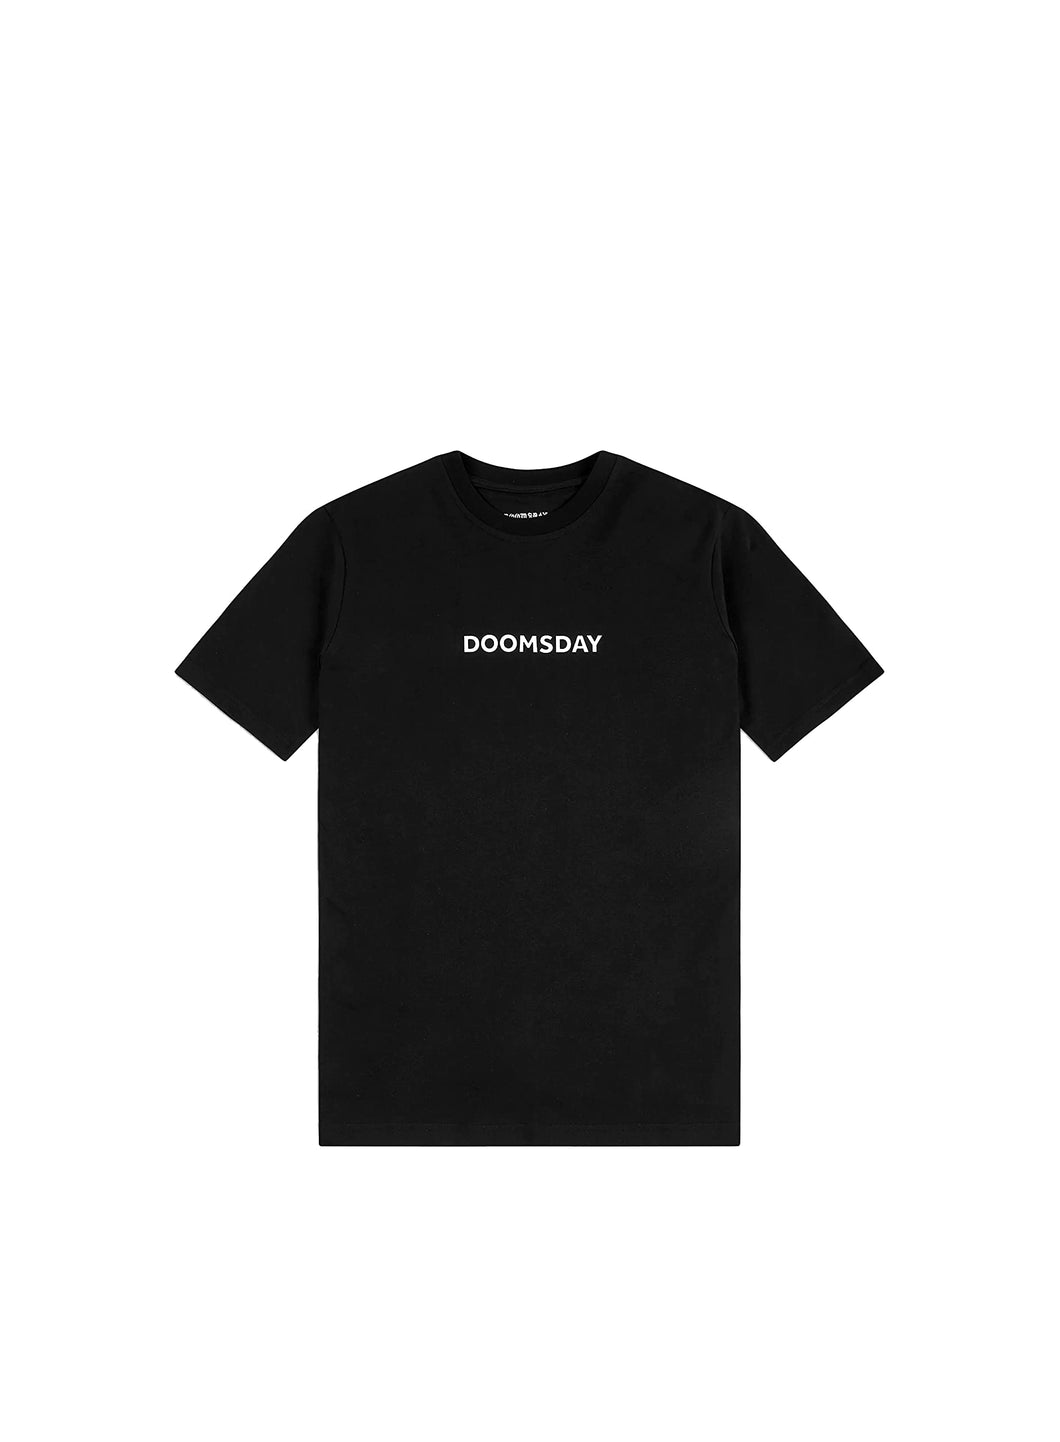 DOOMSDAY T-Shirt Maniche Corte Uomo RIOTMARKET Black S